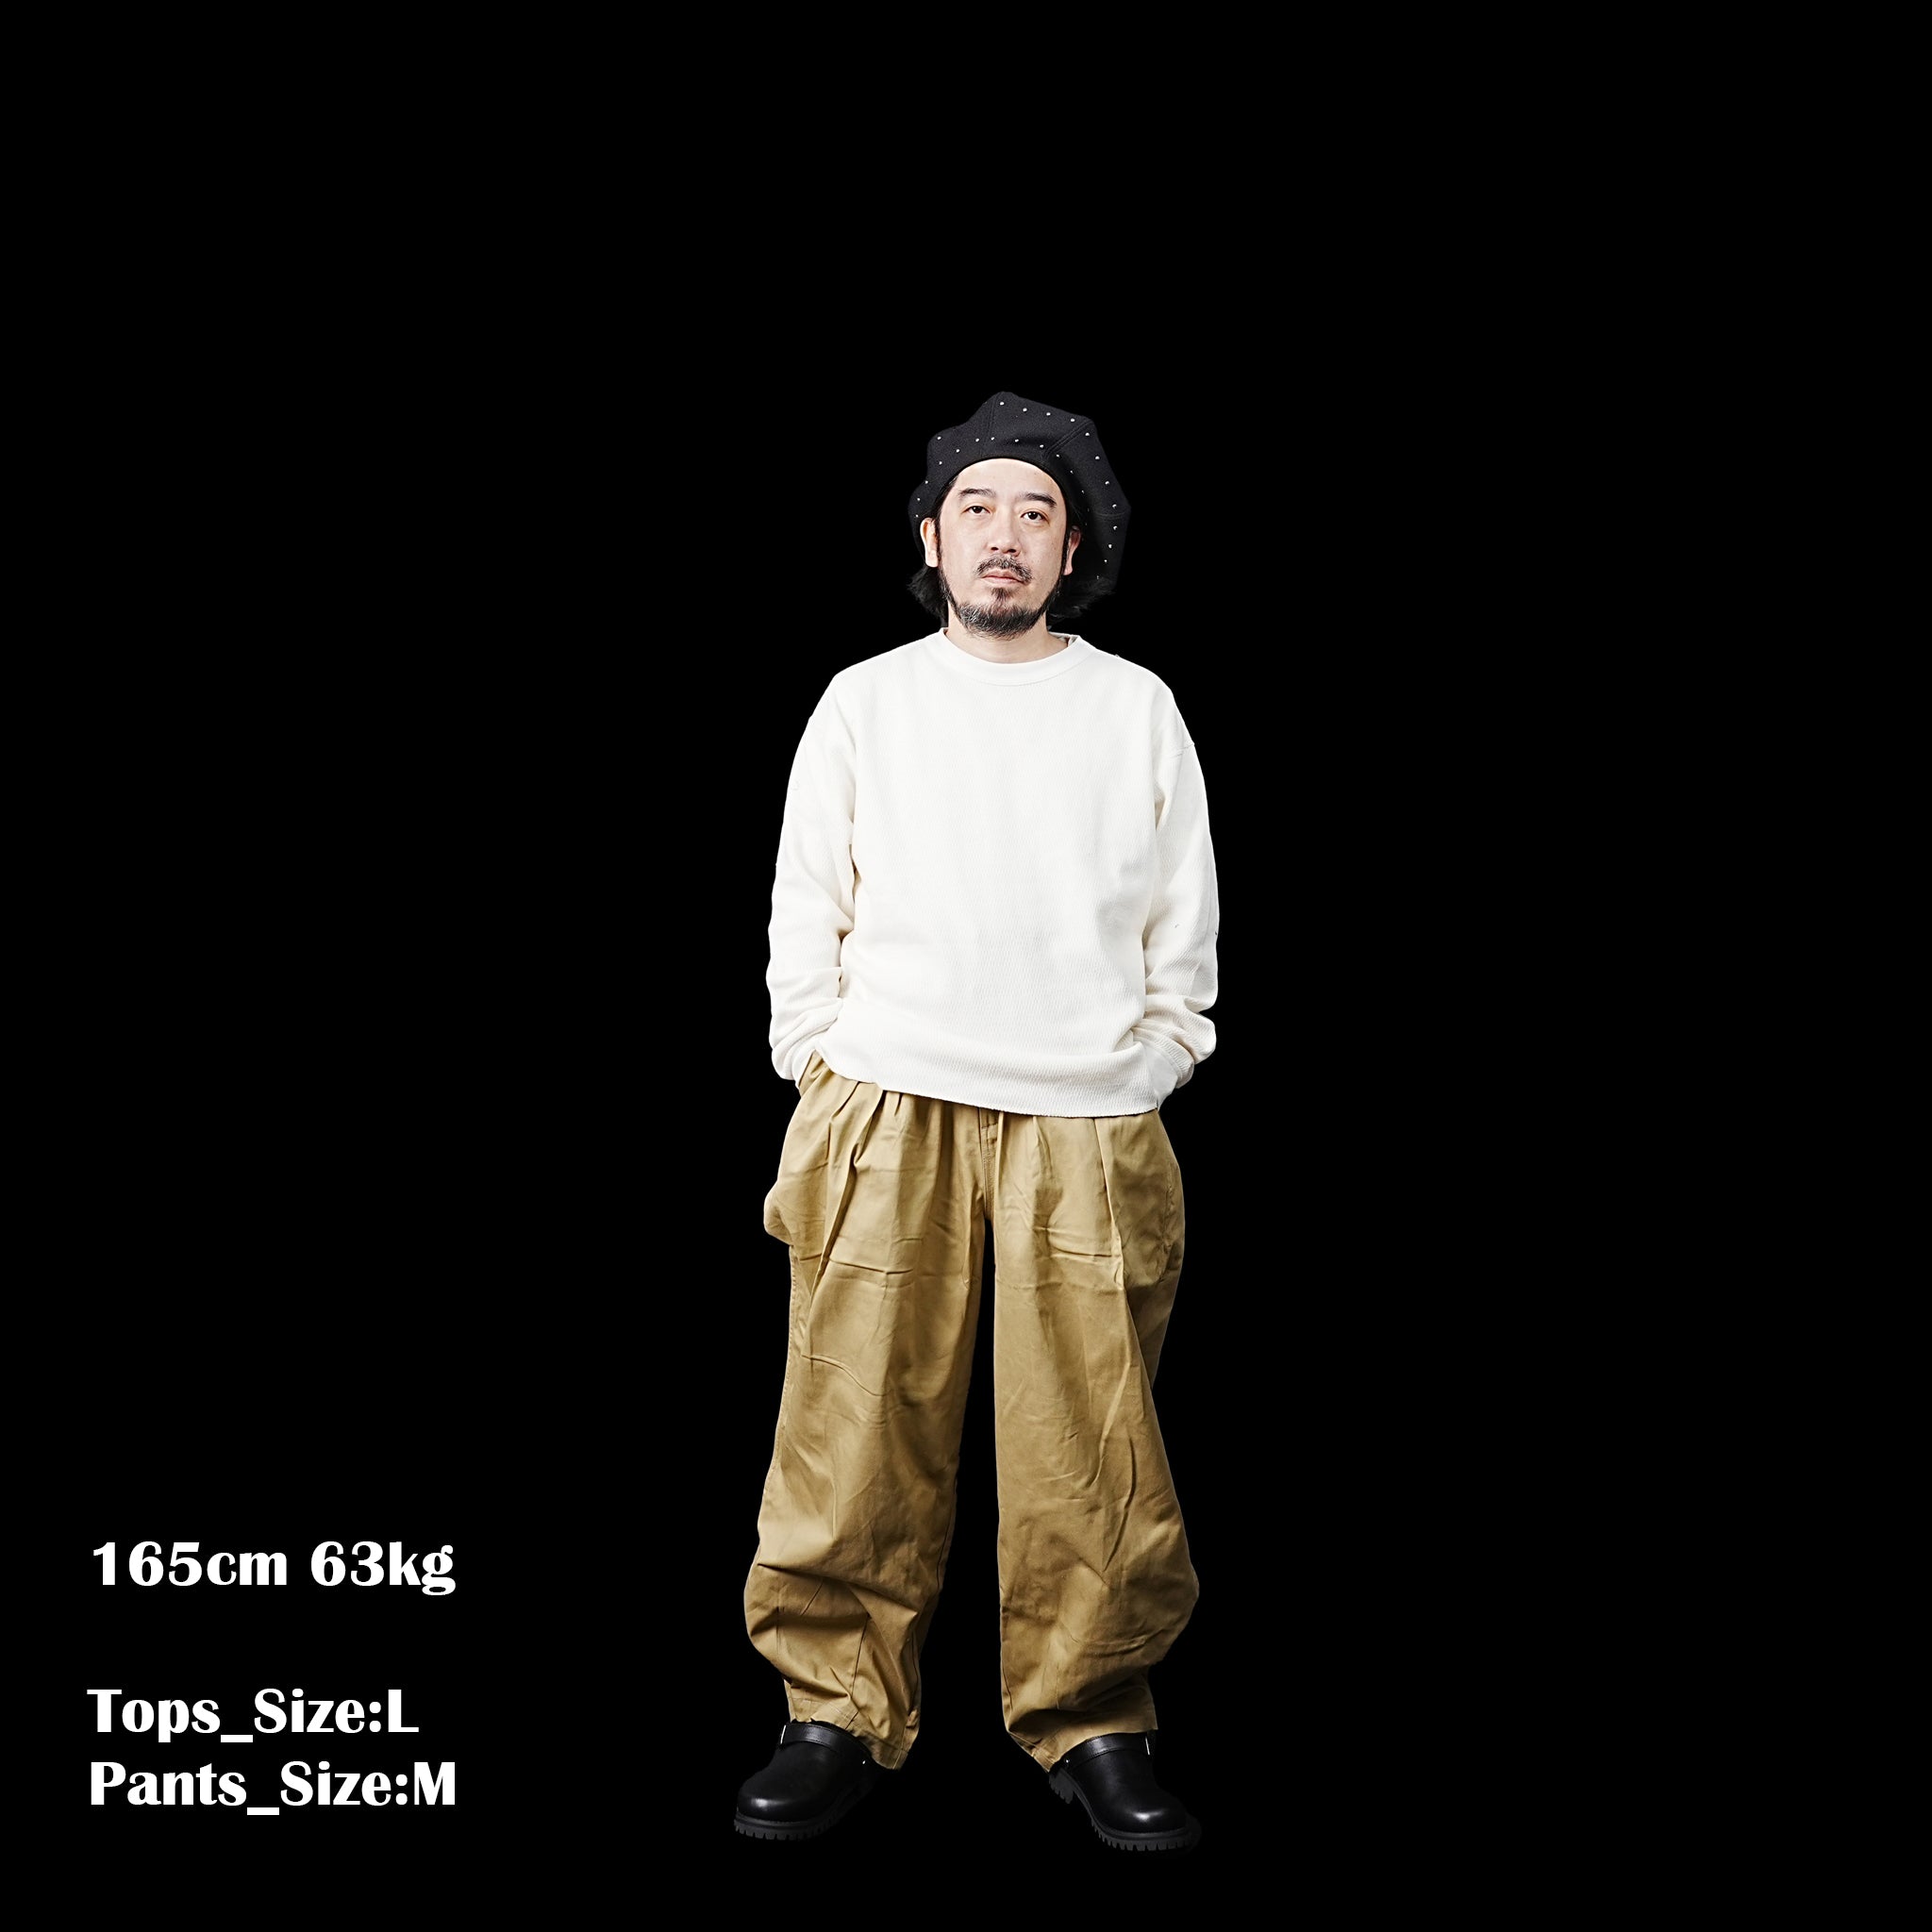 No:#590 | Name:FW23-BIG UNISEX BALLOON PANTS | Color:Khaki | Size:Free【WORKWARE】